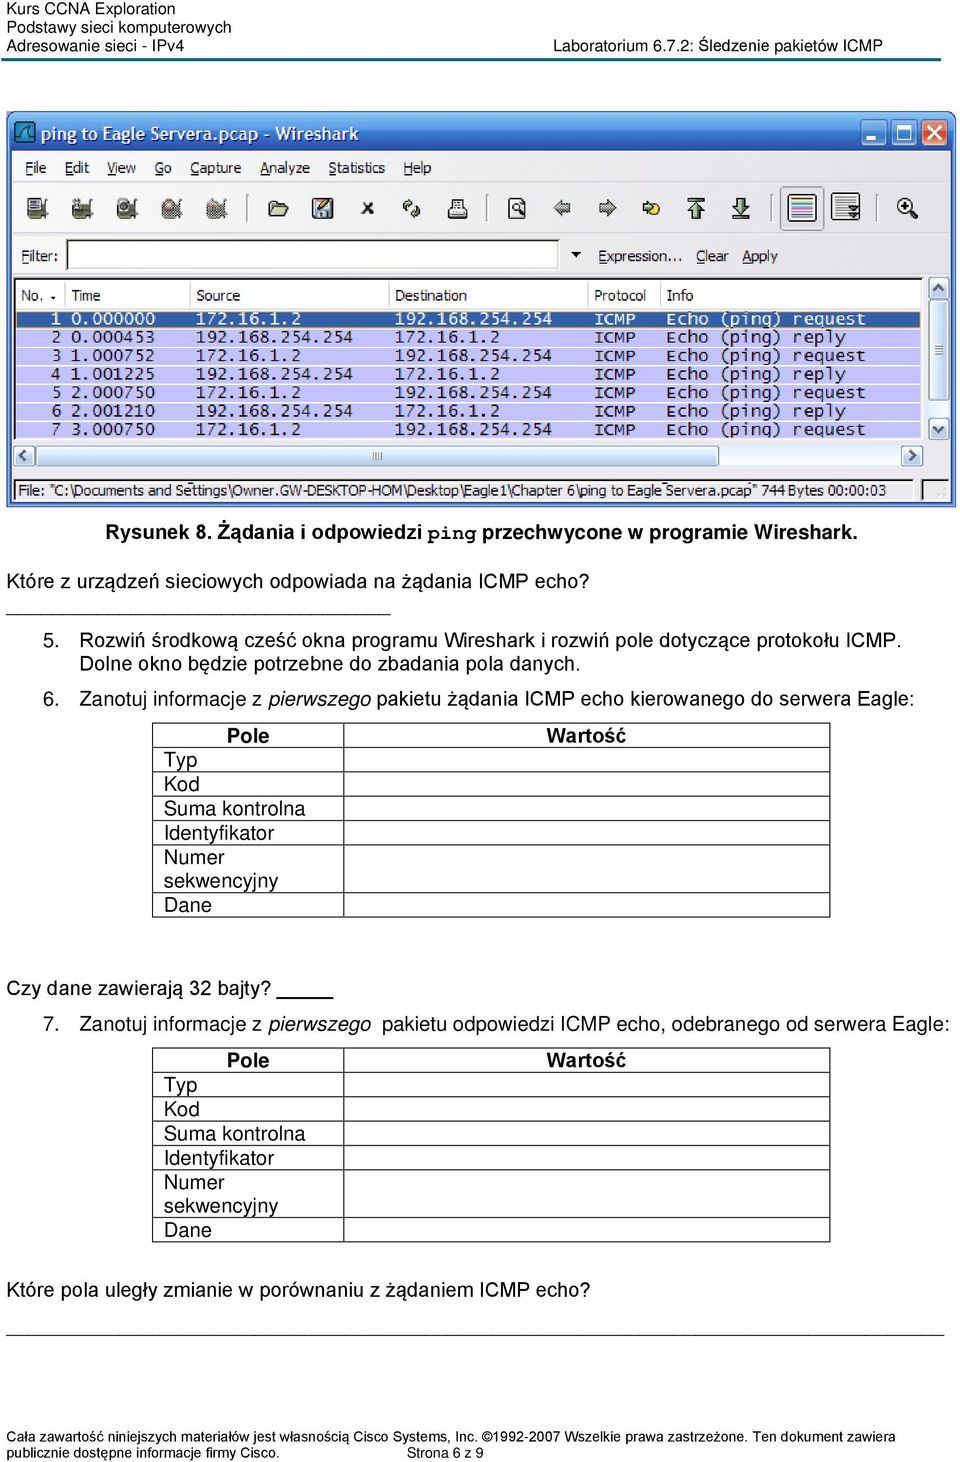 Zanotuj informacje z pierwszego pakietu żądania ICMP echo kierowanego do serwera Eagle: Pole Typ Kod Suma kontrolna Identyfikator Numer sekwencyjny Dane Czy dane zawierają 32 bajty? 7.